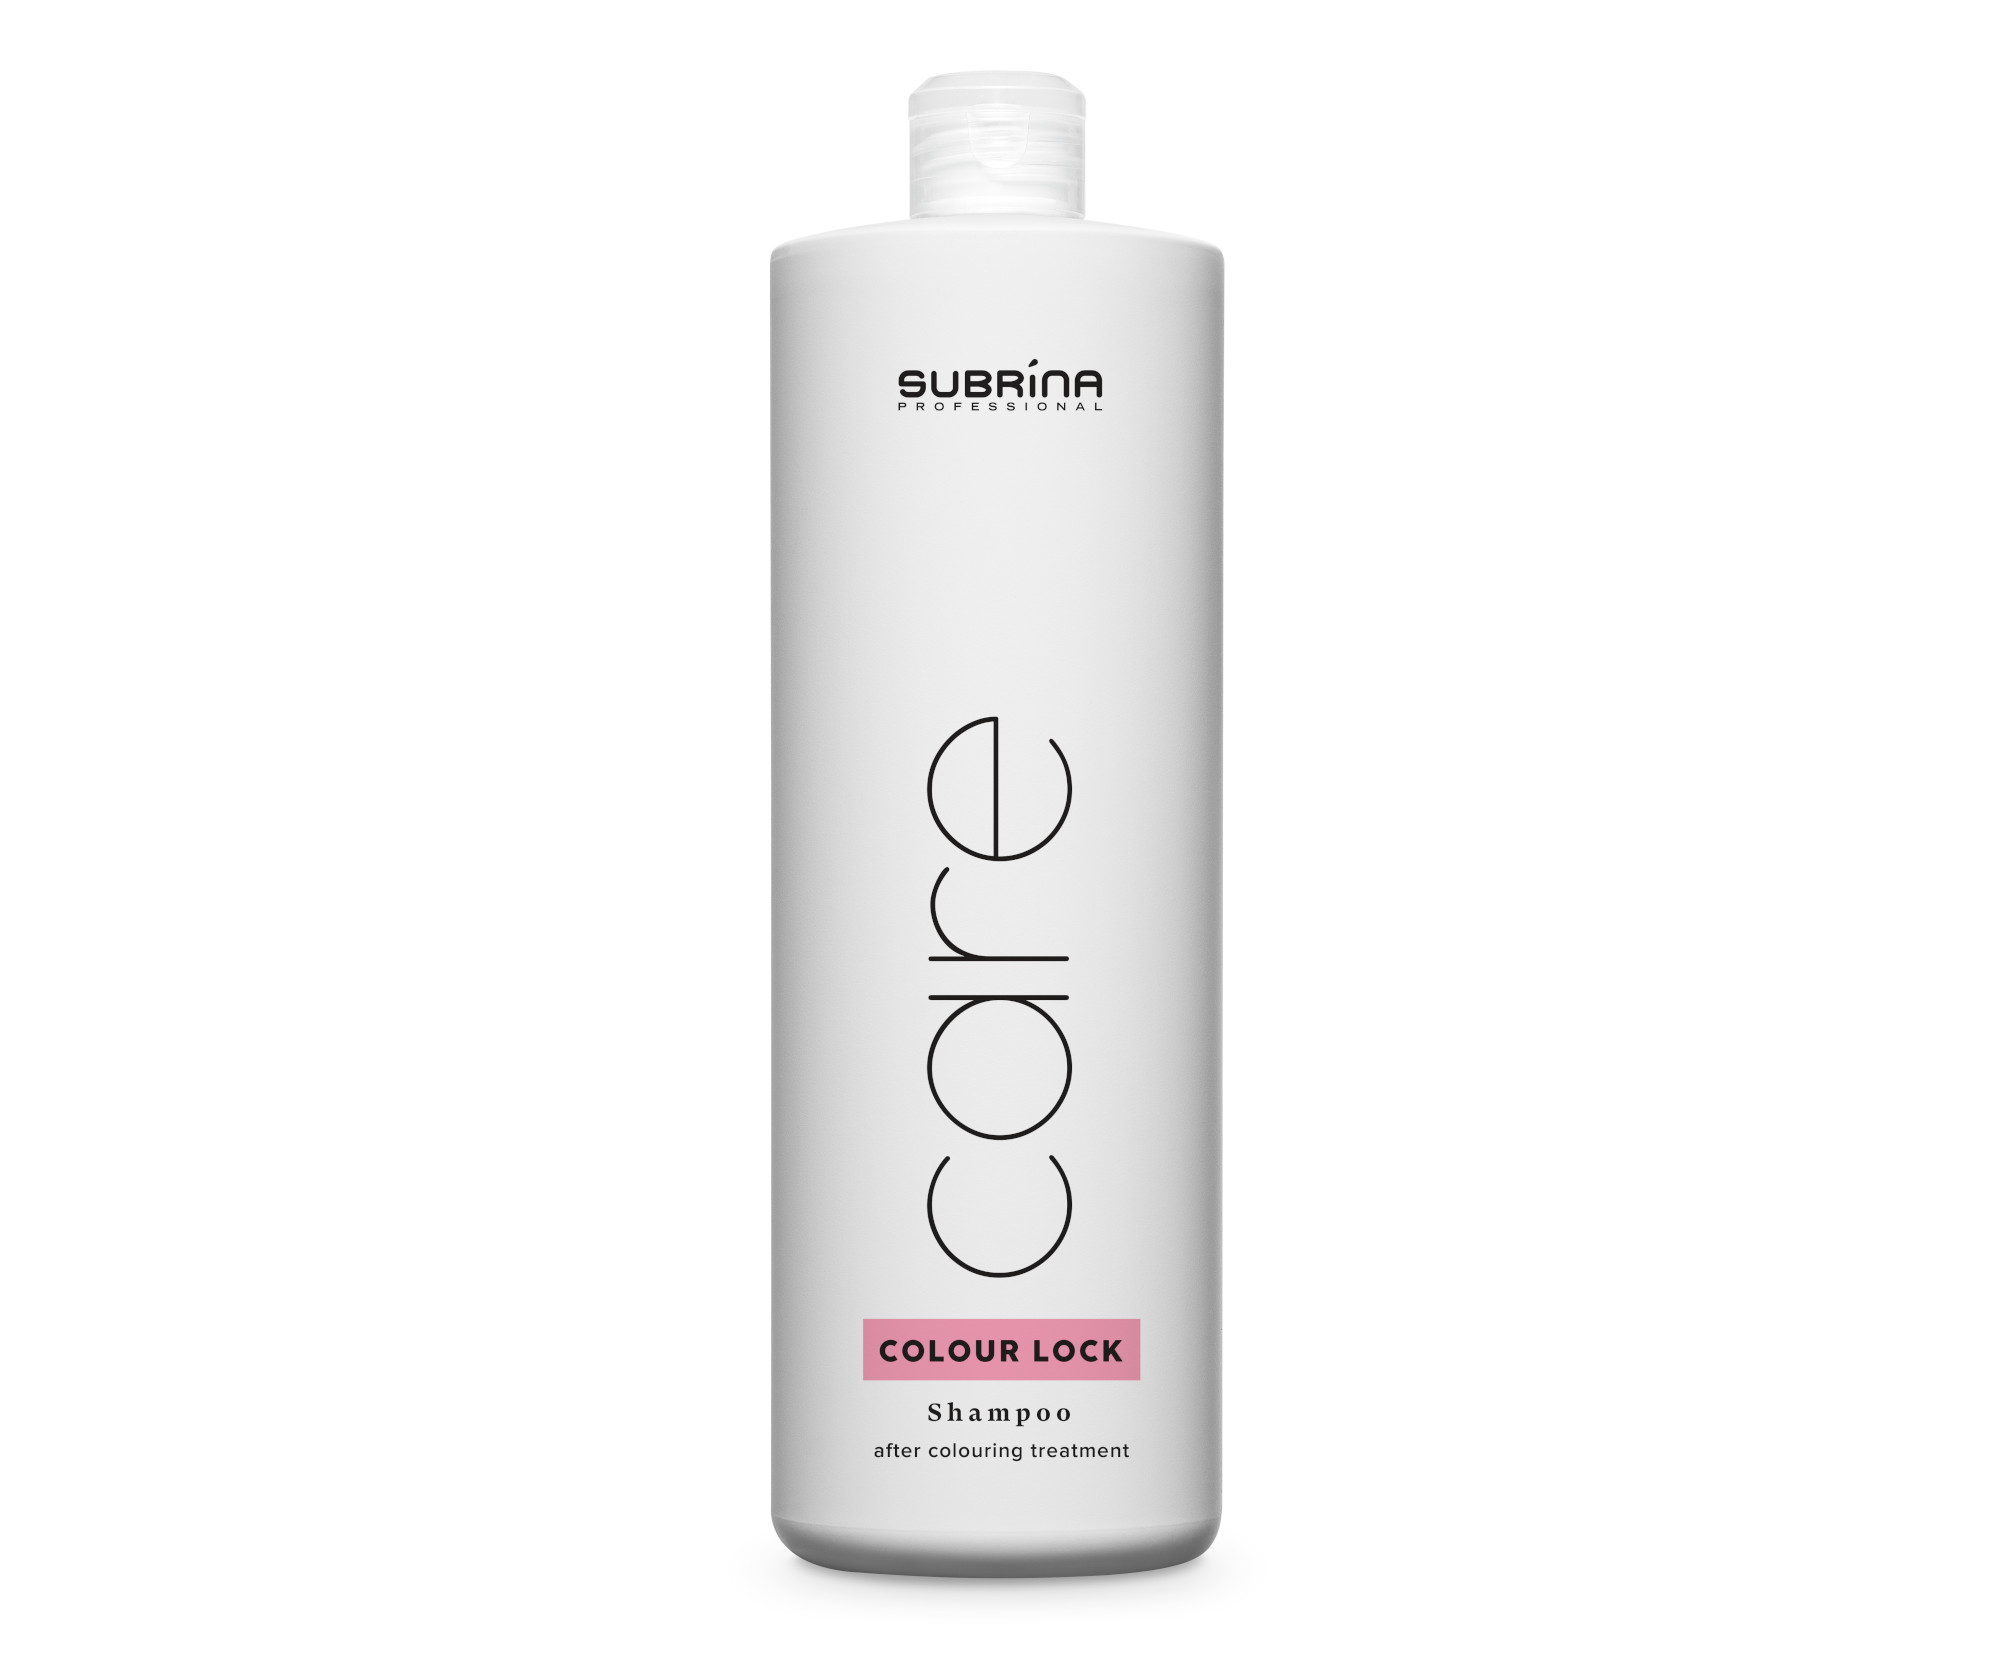 Šampon po barvení vlasů Subrina Professional Care Colour Lock Shampoo - 1000 ml (060269) + DÁREK ZDARMA